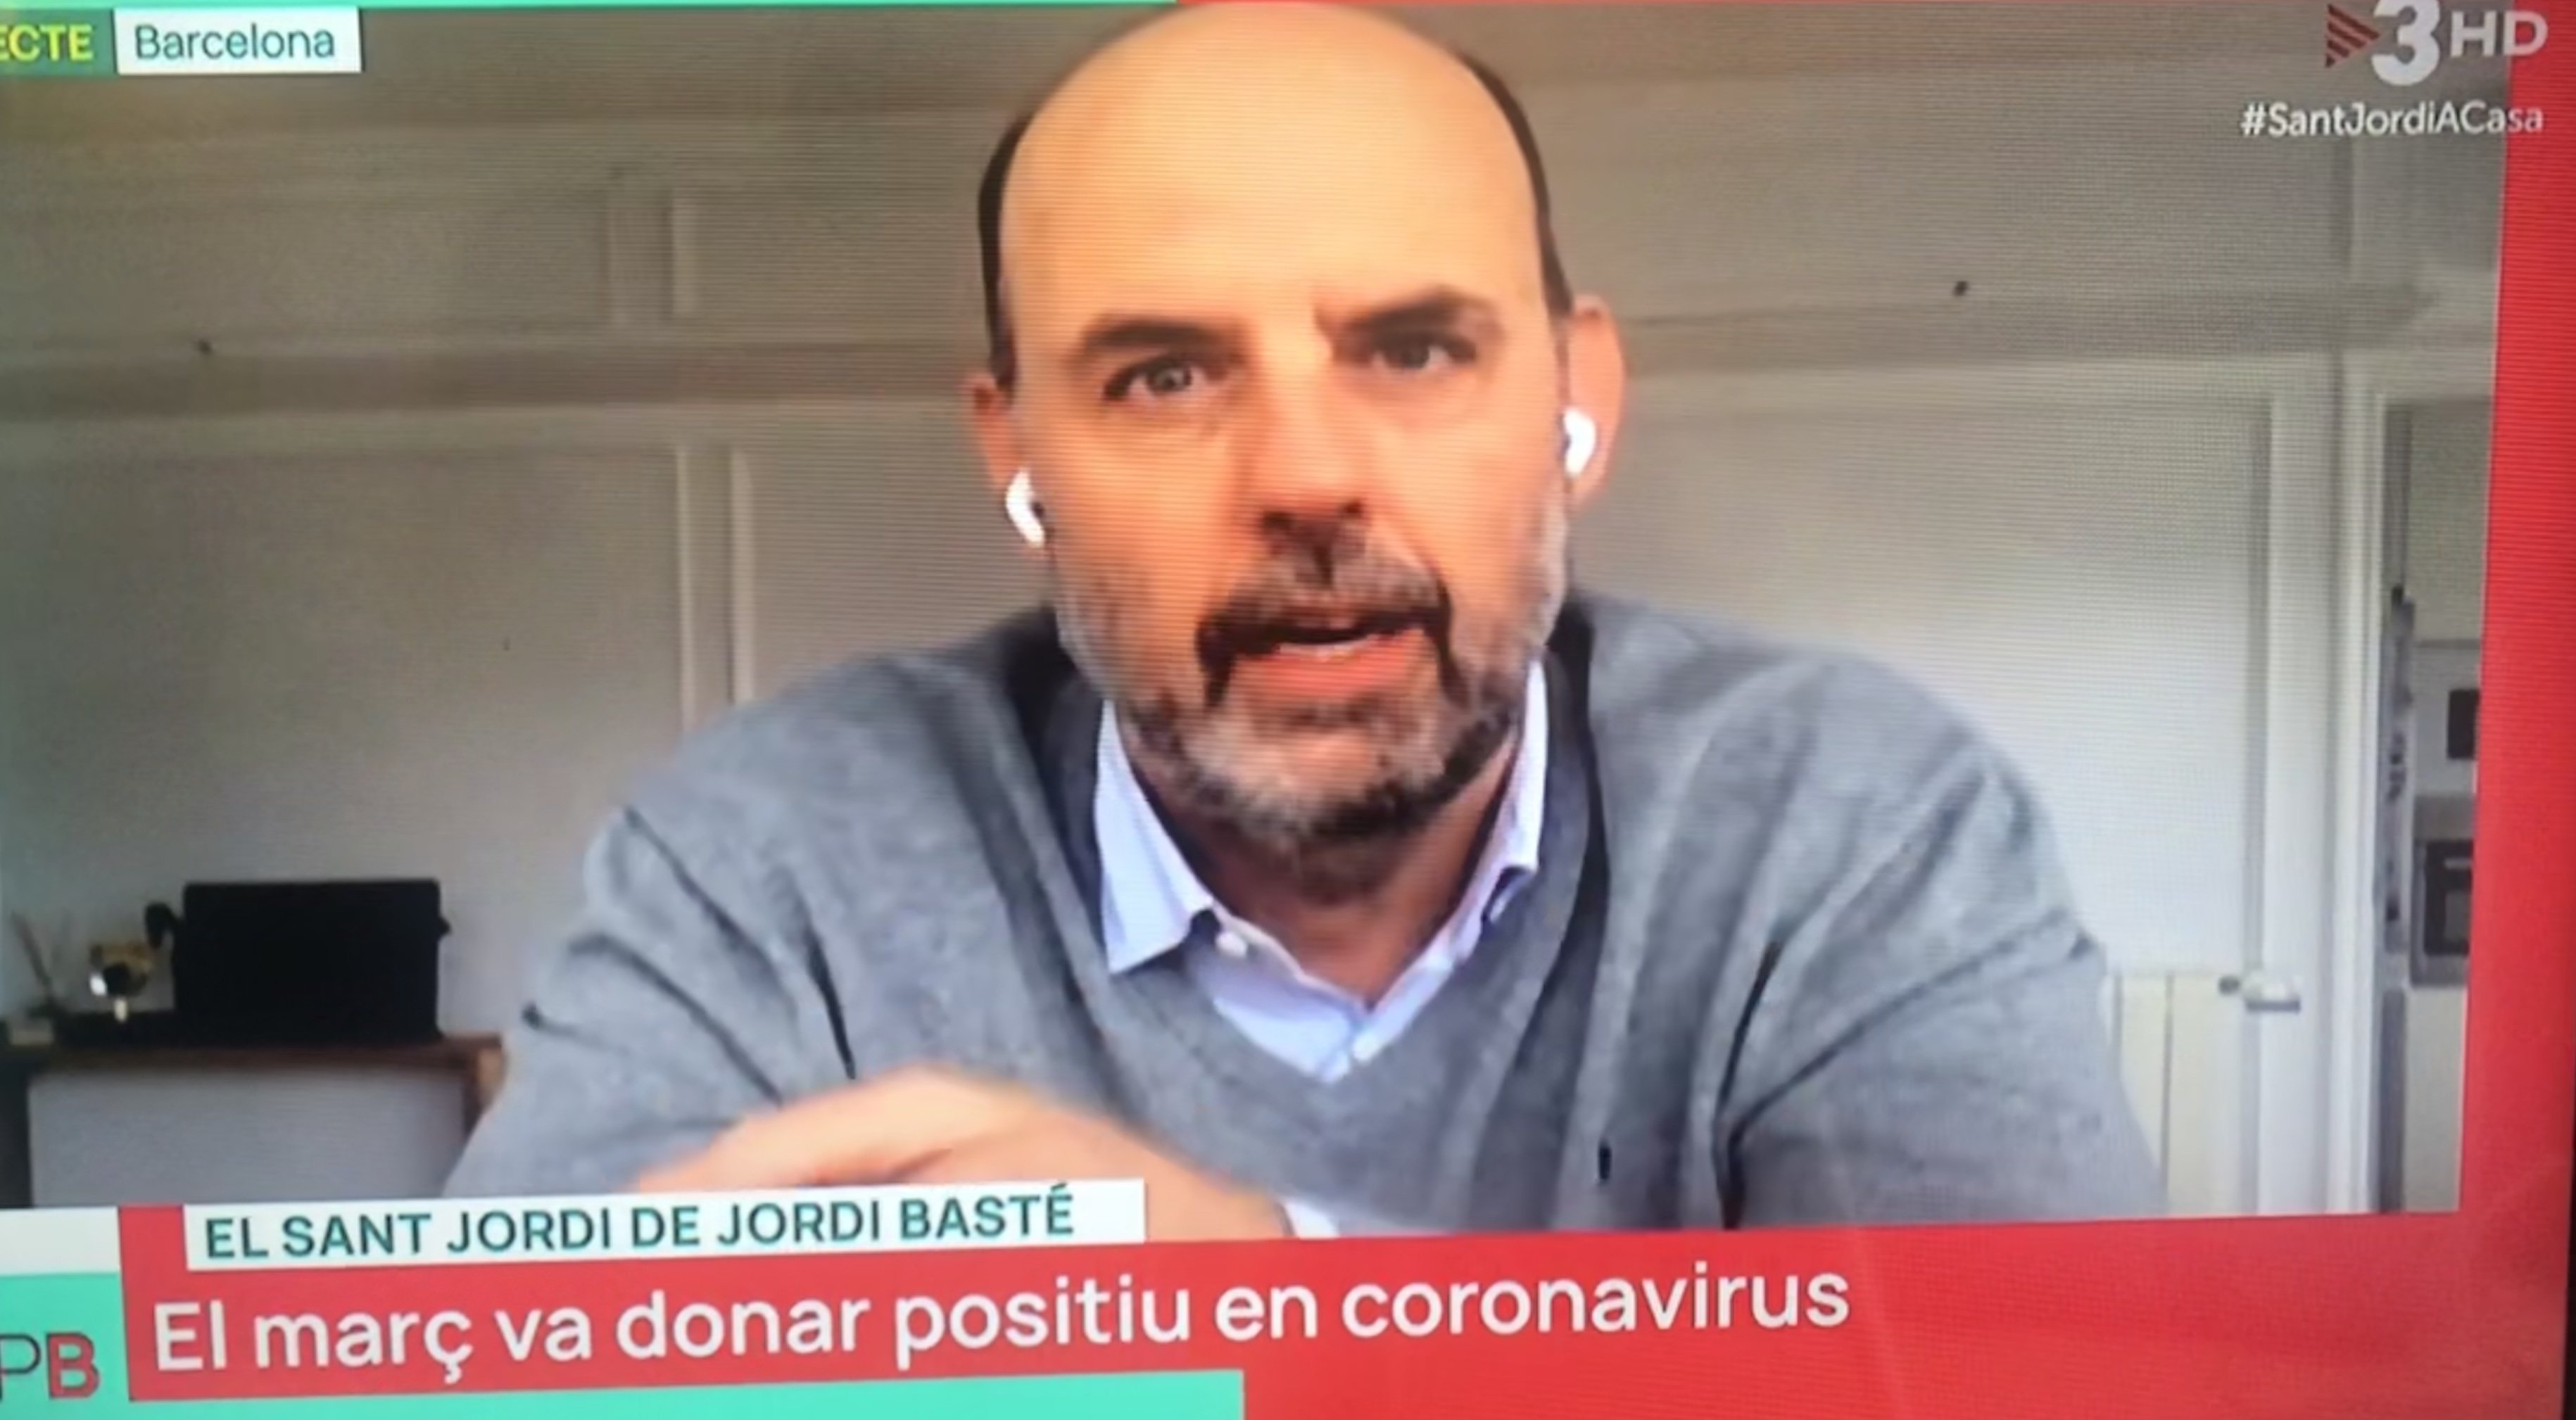 Jordi Basté explica en TV3 las secuelas del Covid-19 "Quiero volver, pero..."